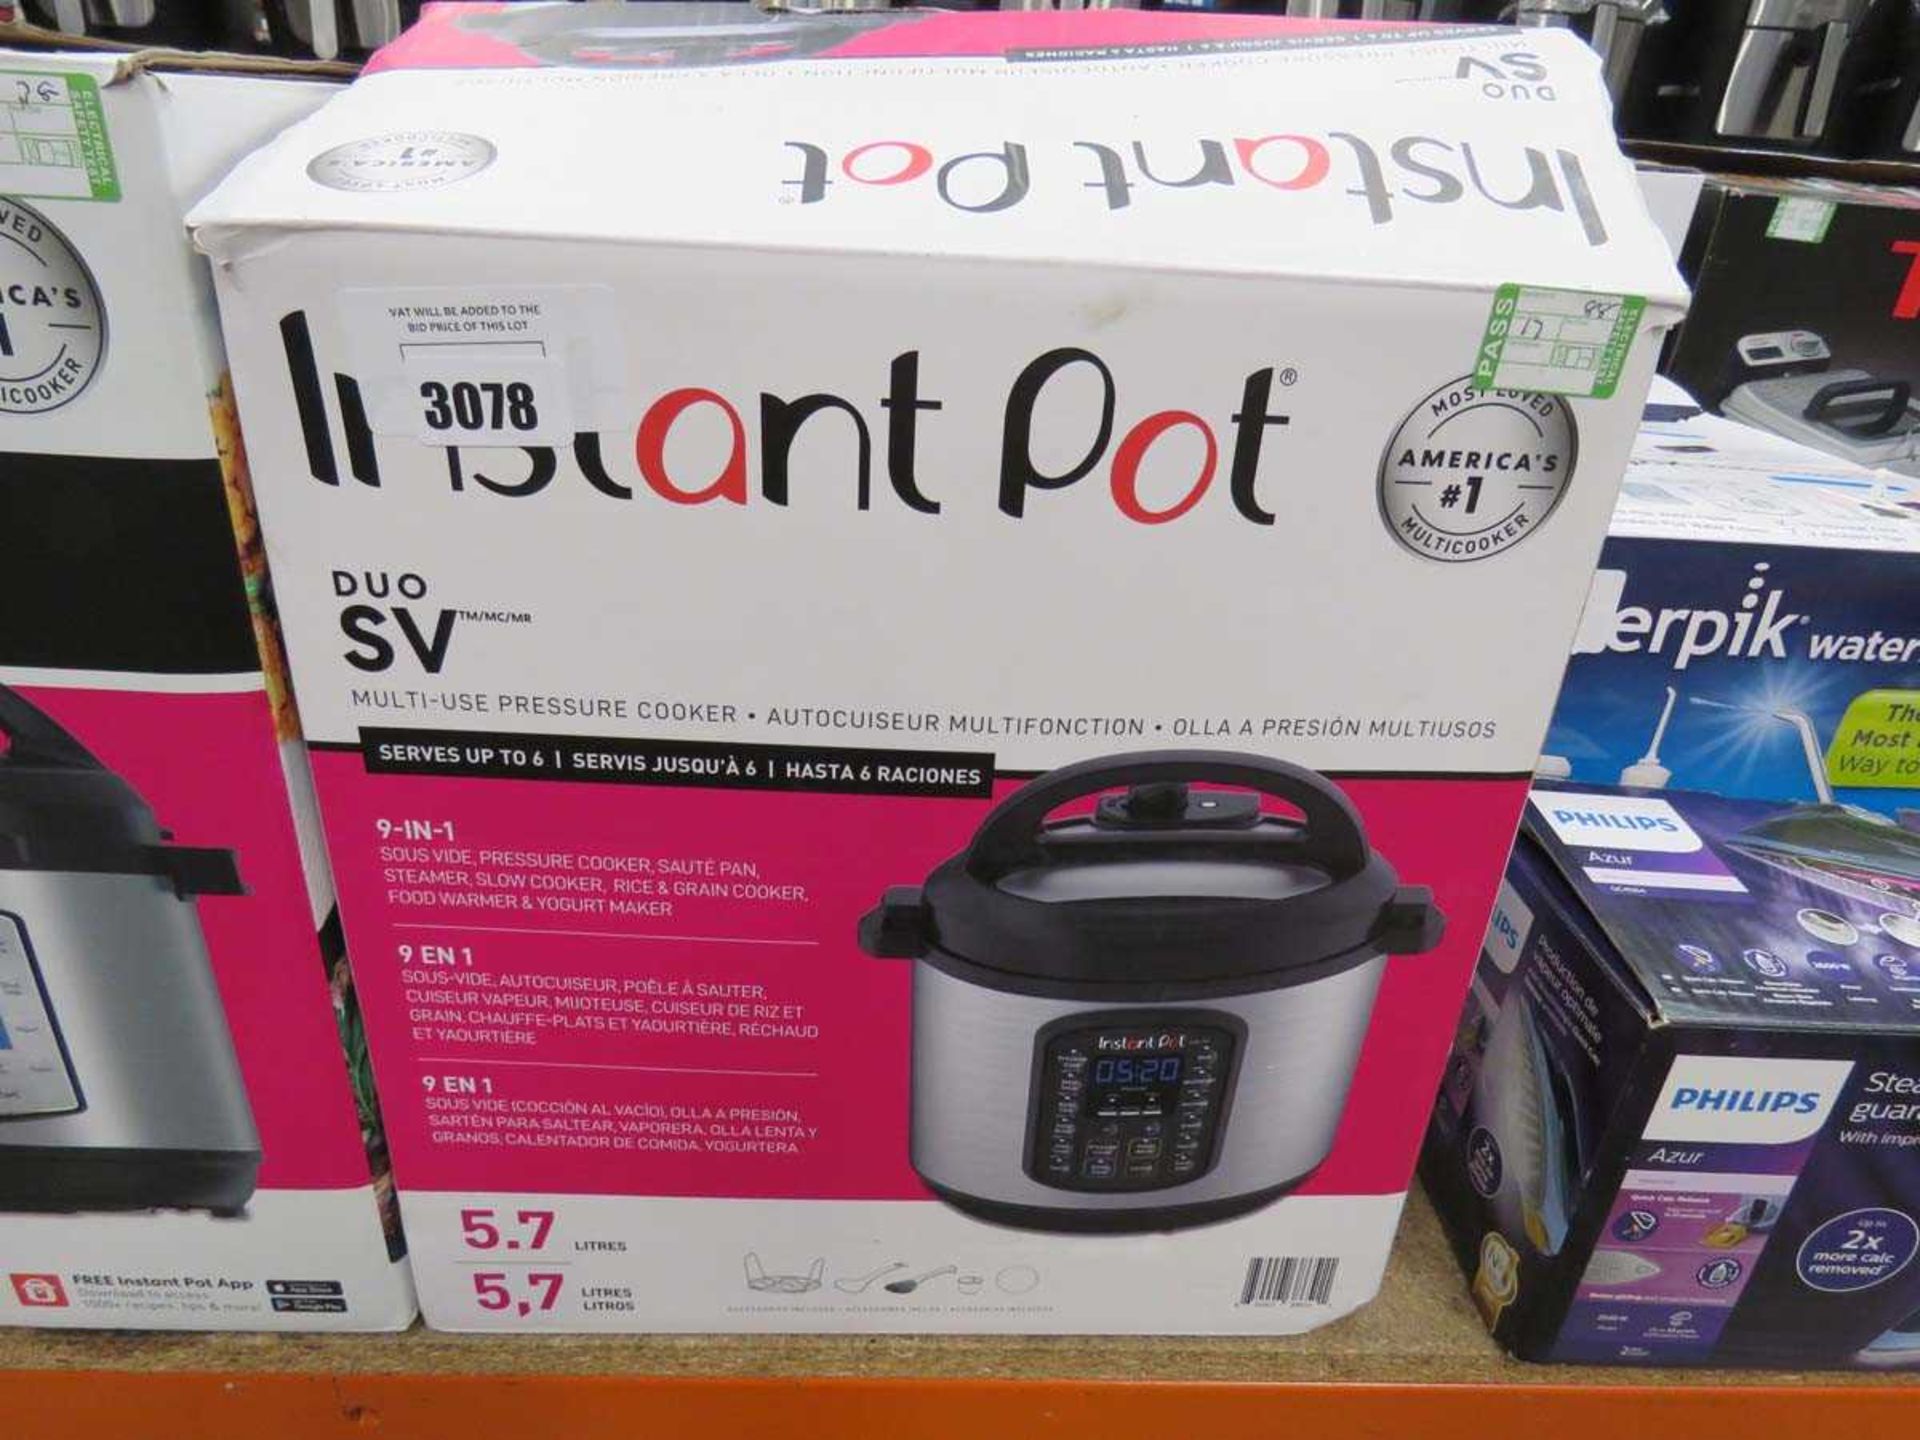 +VAT Instant Pot Due SV multi use pressure cooker